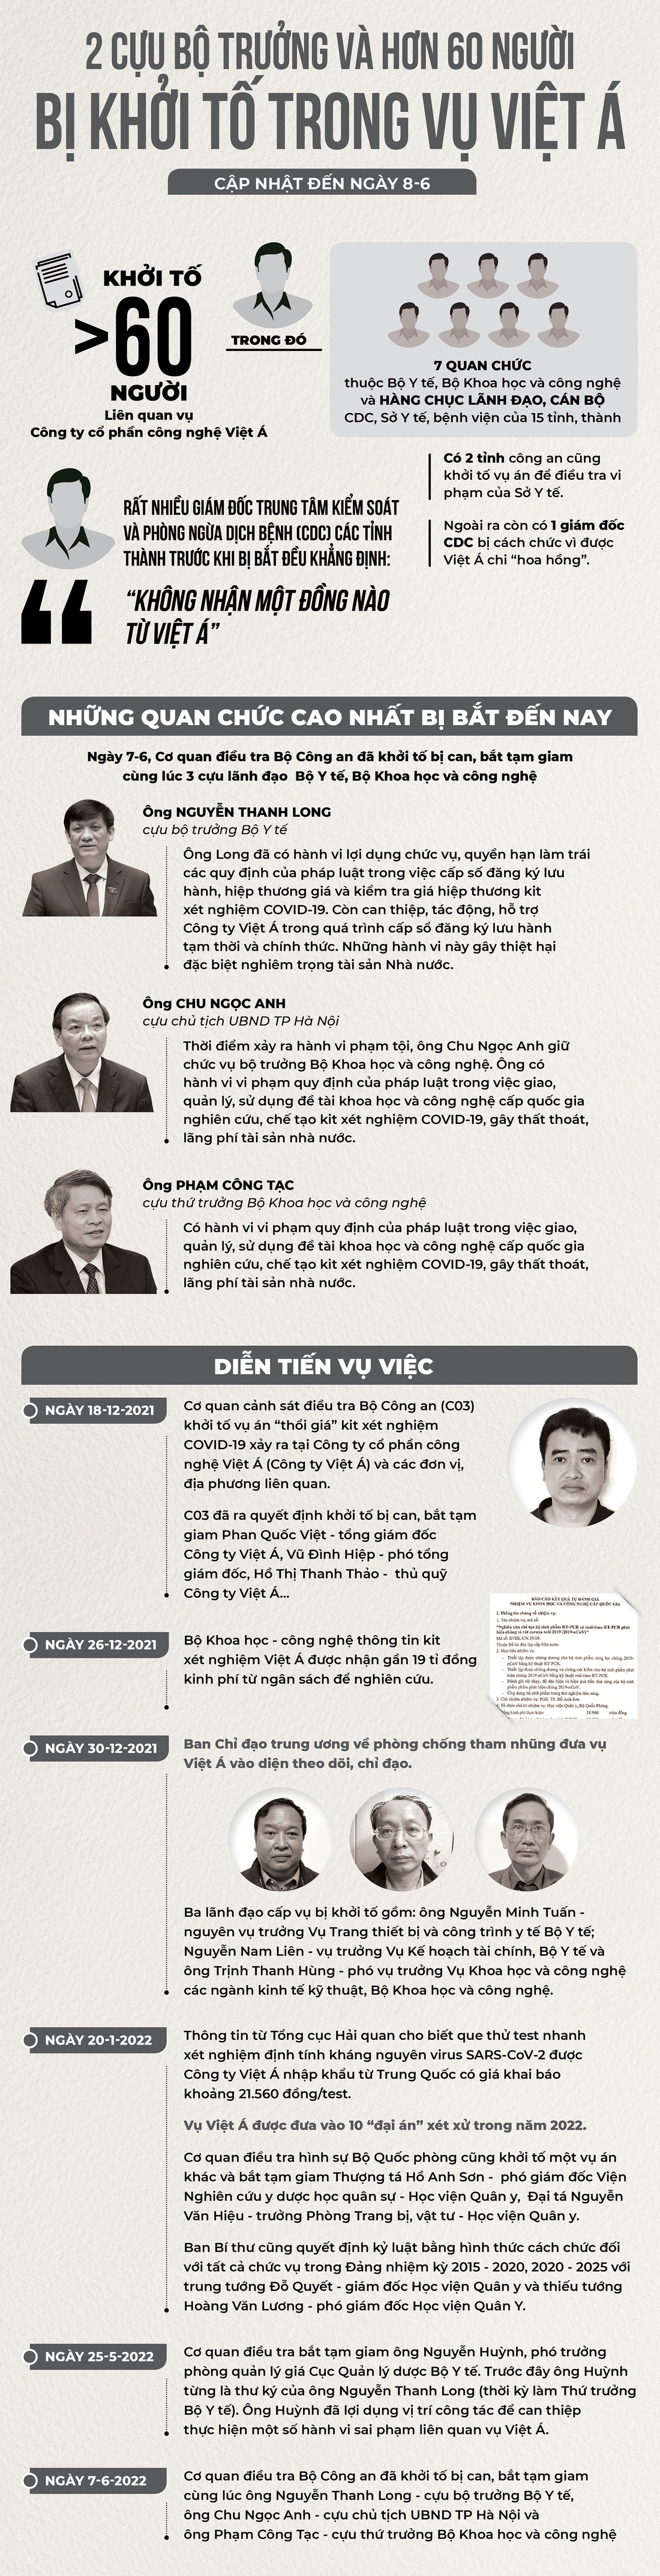 Đến nay, 2 cựu bộ trưởng và hơn 60 người bị khởi tố liên quan vụ Việt Á - Ảnh 1.